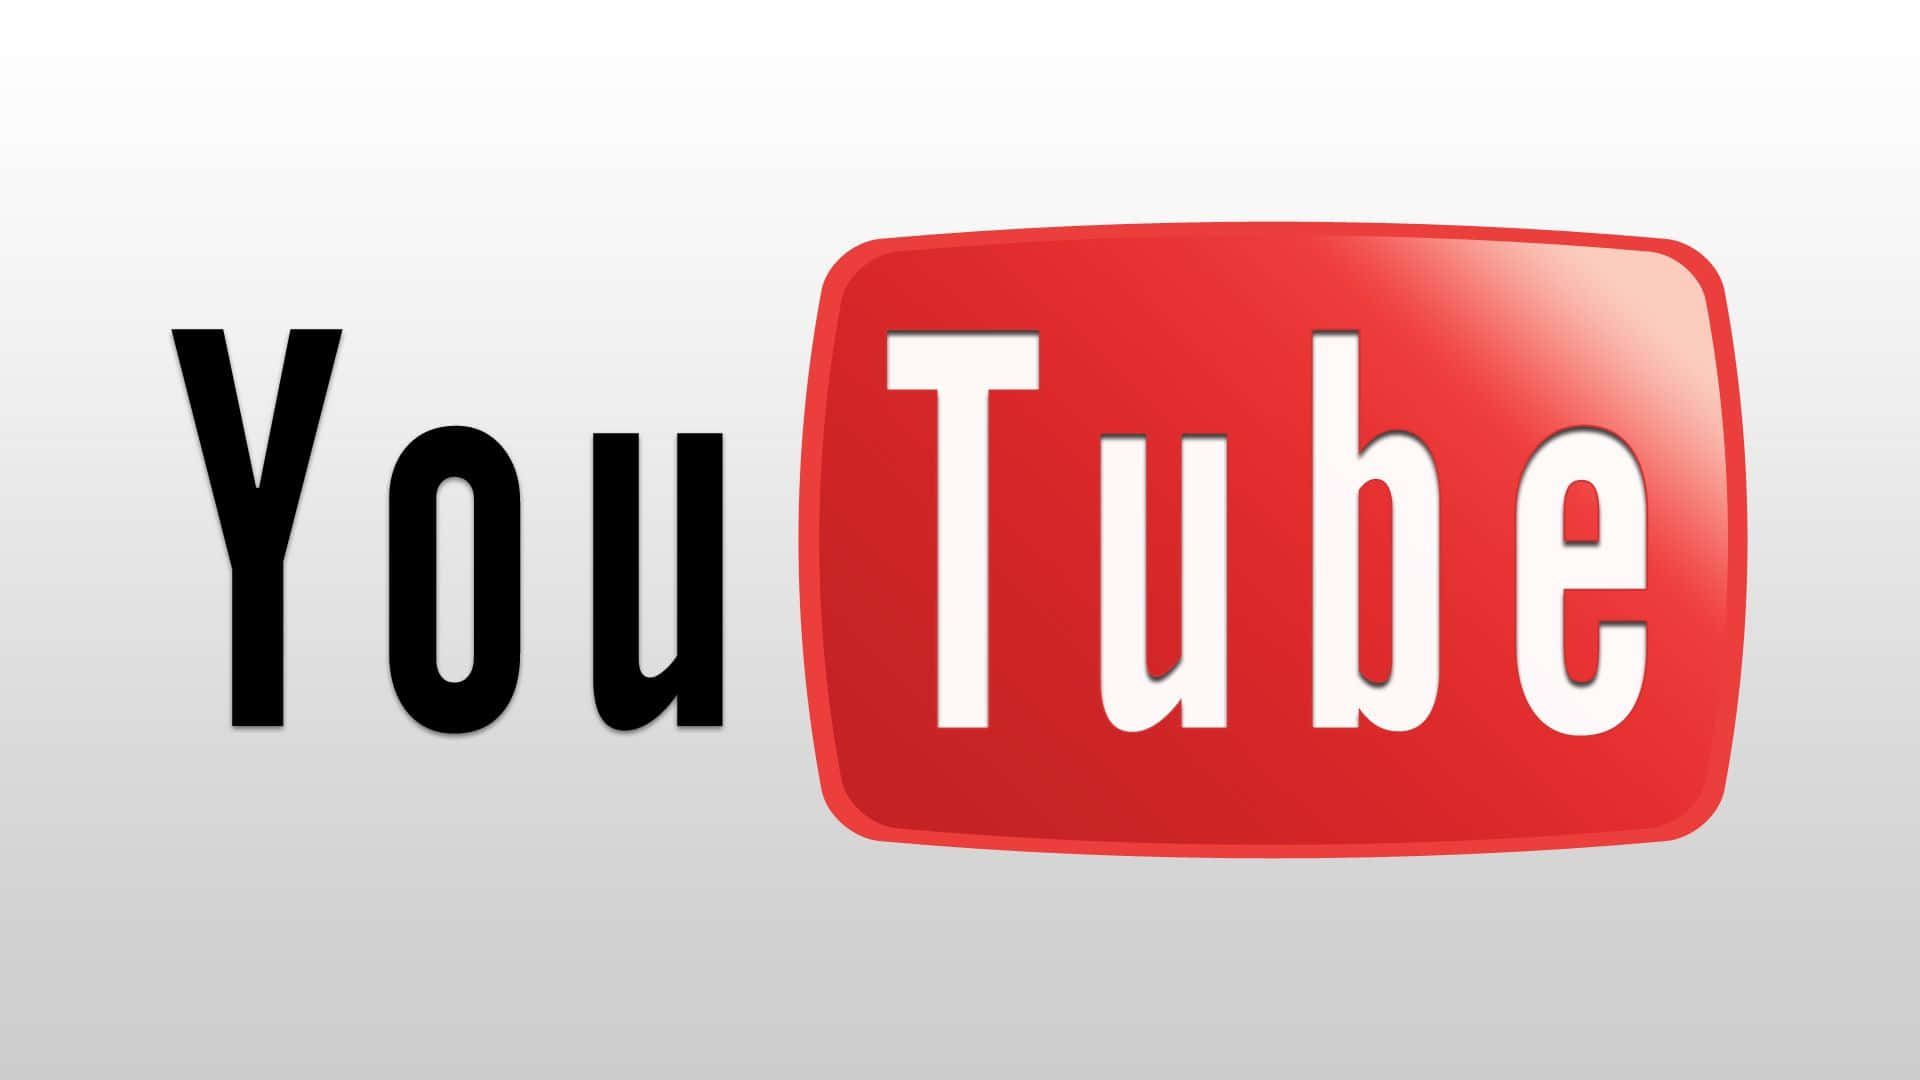 Logotipode Youtube Con Fondo Rojo